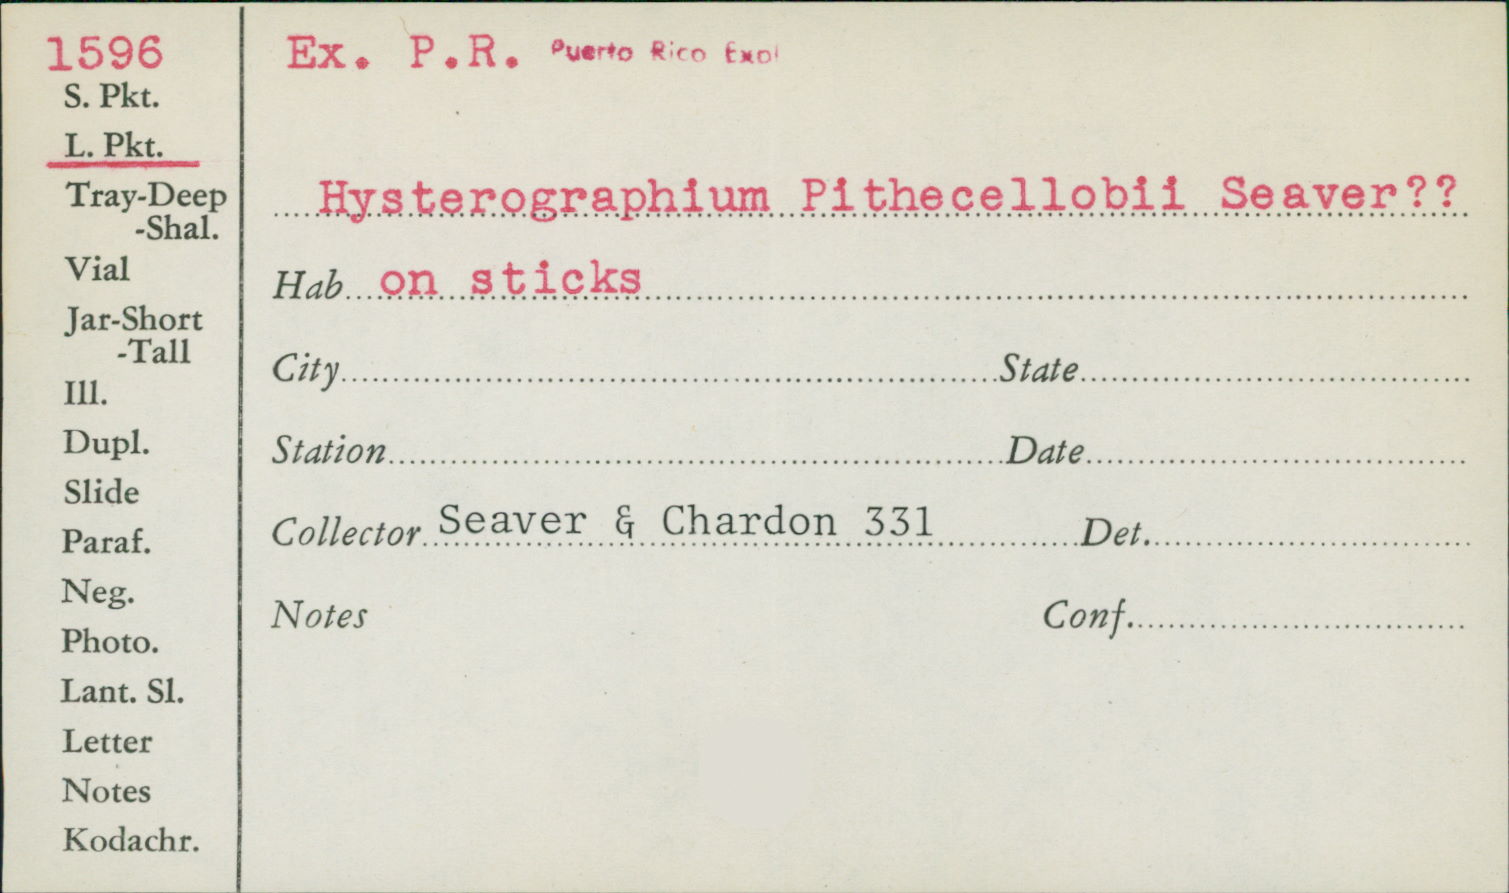 Hysterographium pithecellobii image